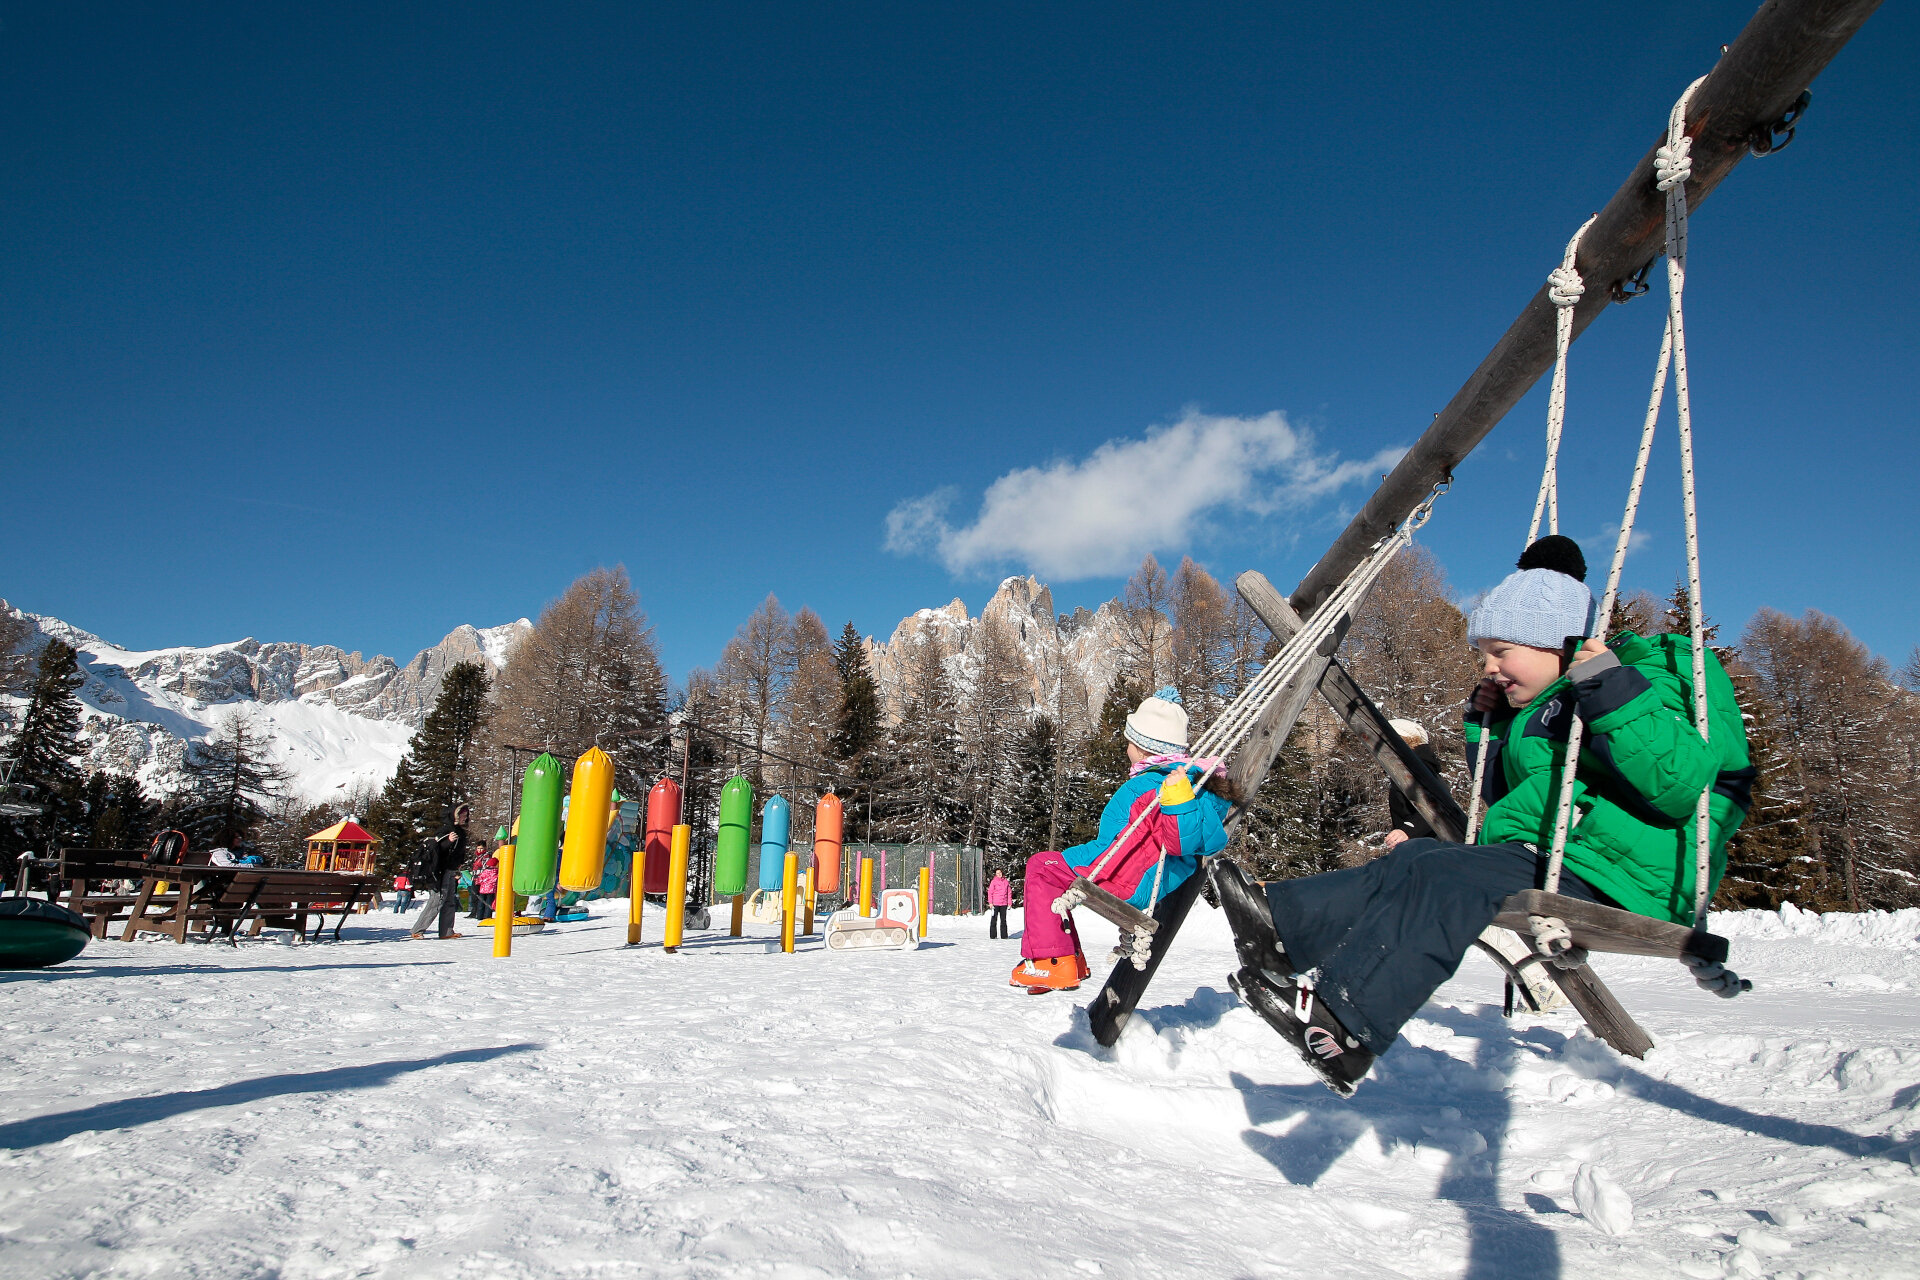 Parco giochi sulla neve al Ciampedie in Val di Fassa | © Federico Modica  - Archivio Immagini ApT Val di Fassa